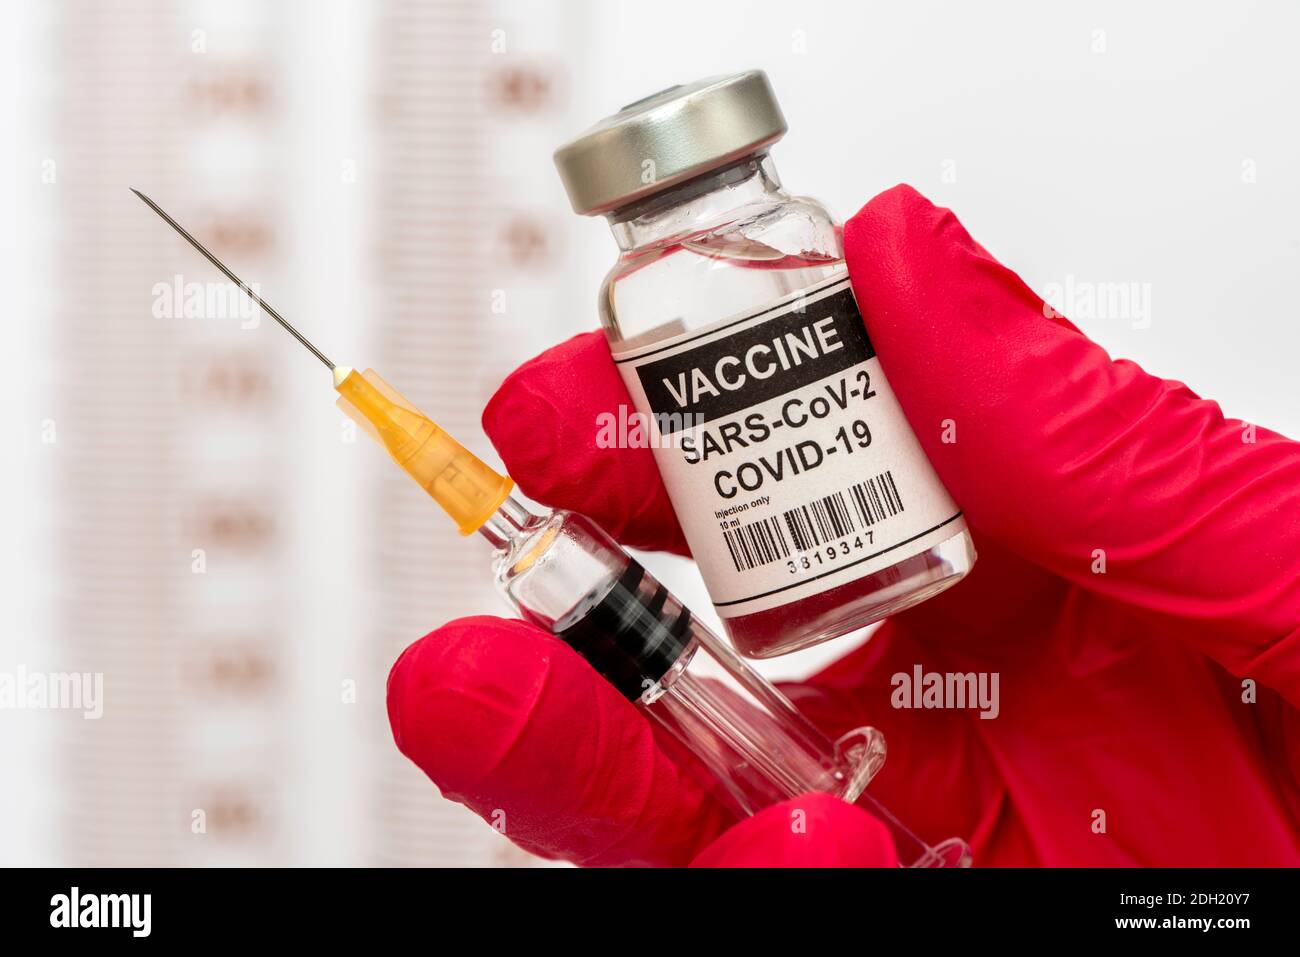 Impfung mit Serum gegen COVID-19 Coronavirus Foto Stock